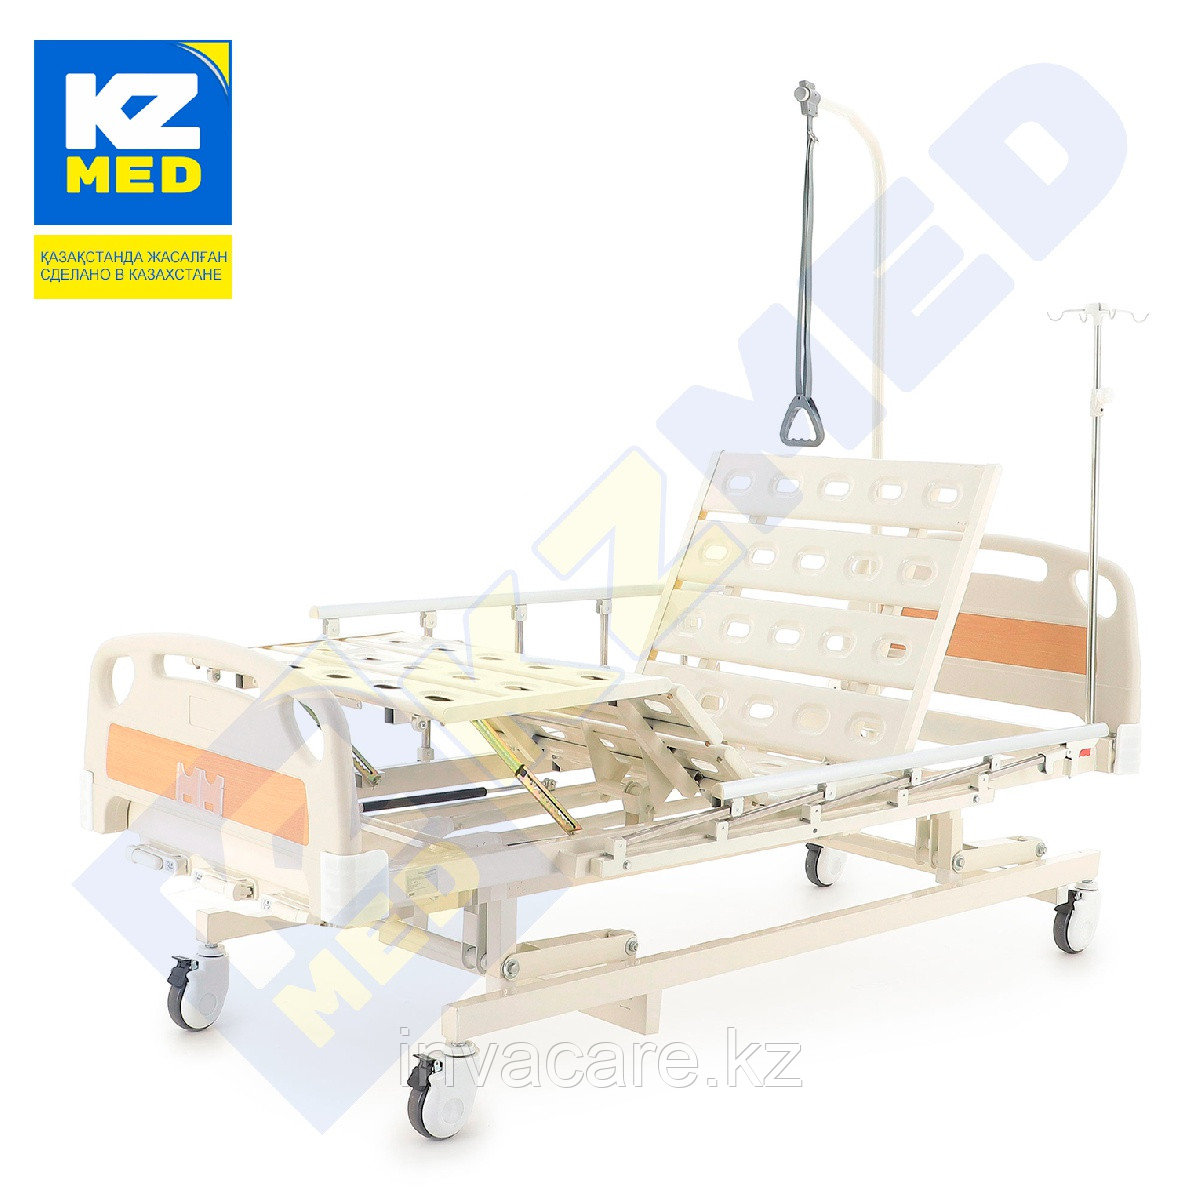 Кровать медицинская "KZMED" (304M спинки ABS), белый